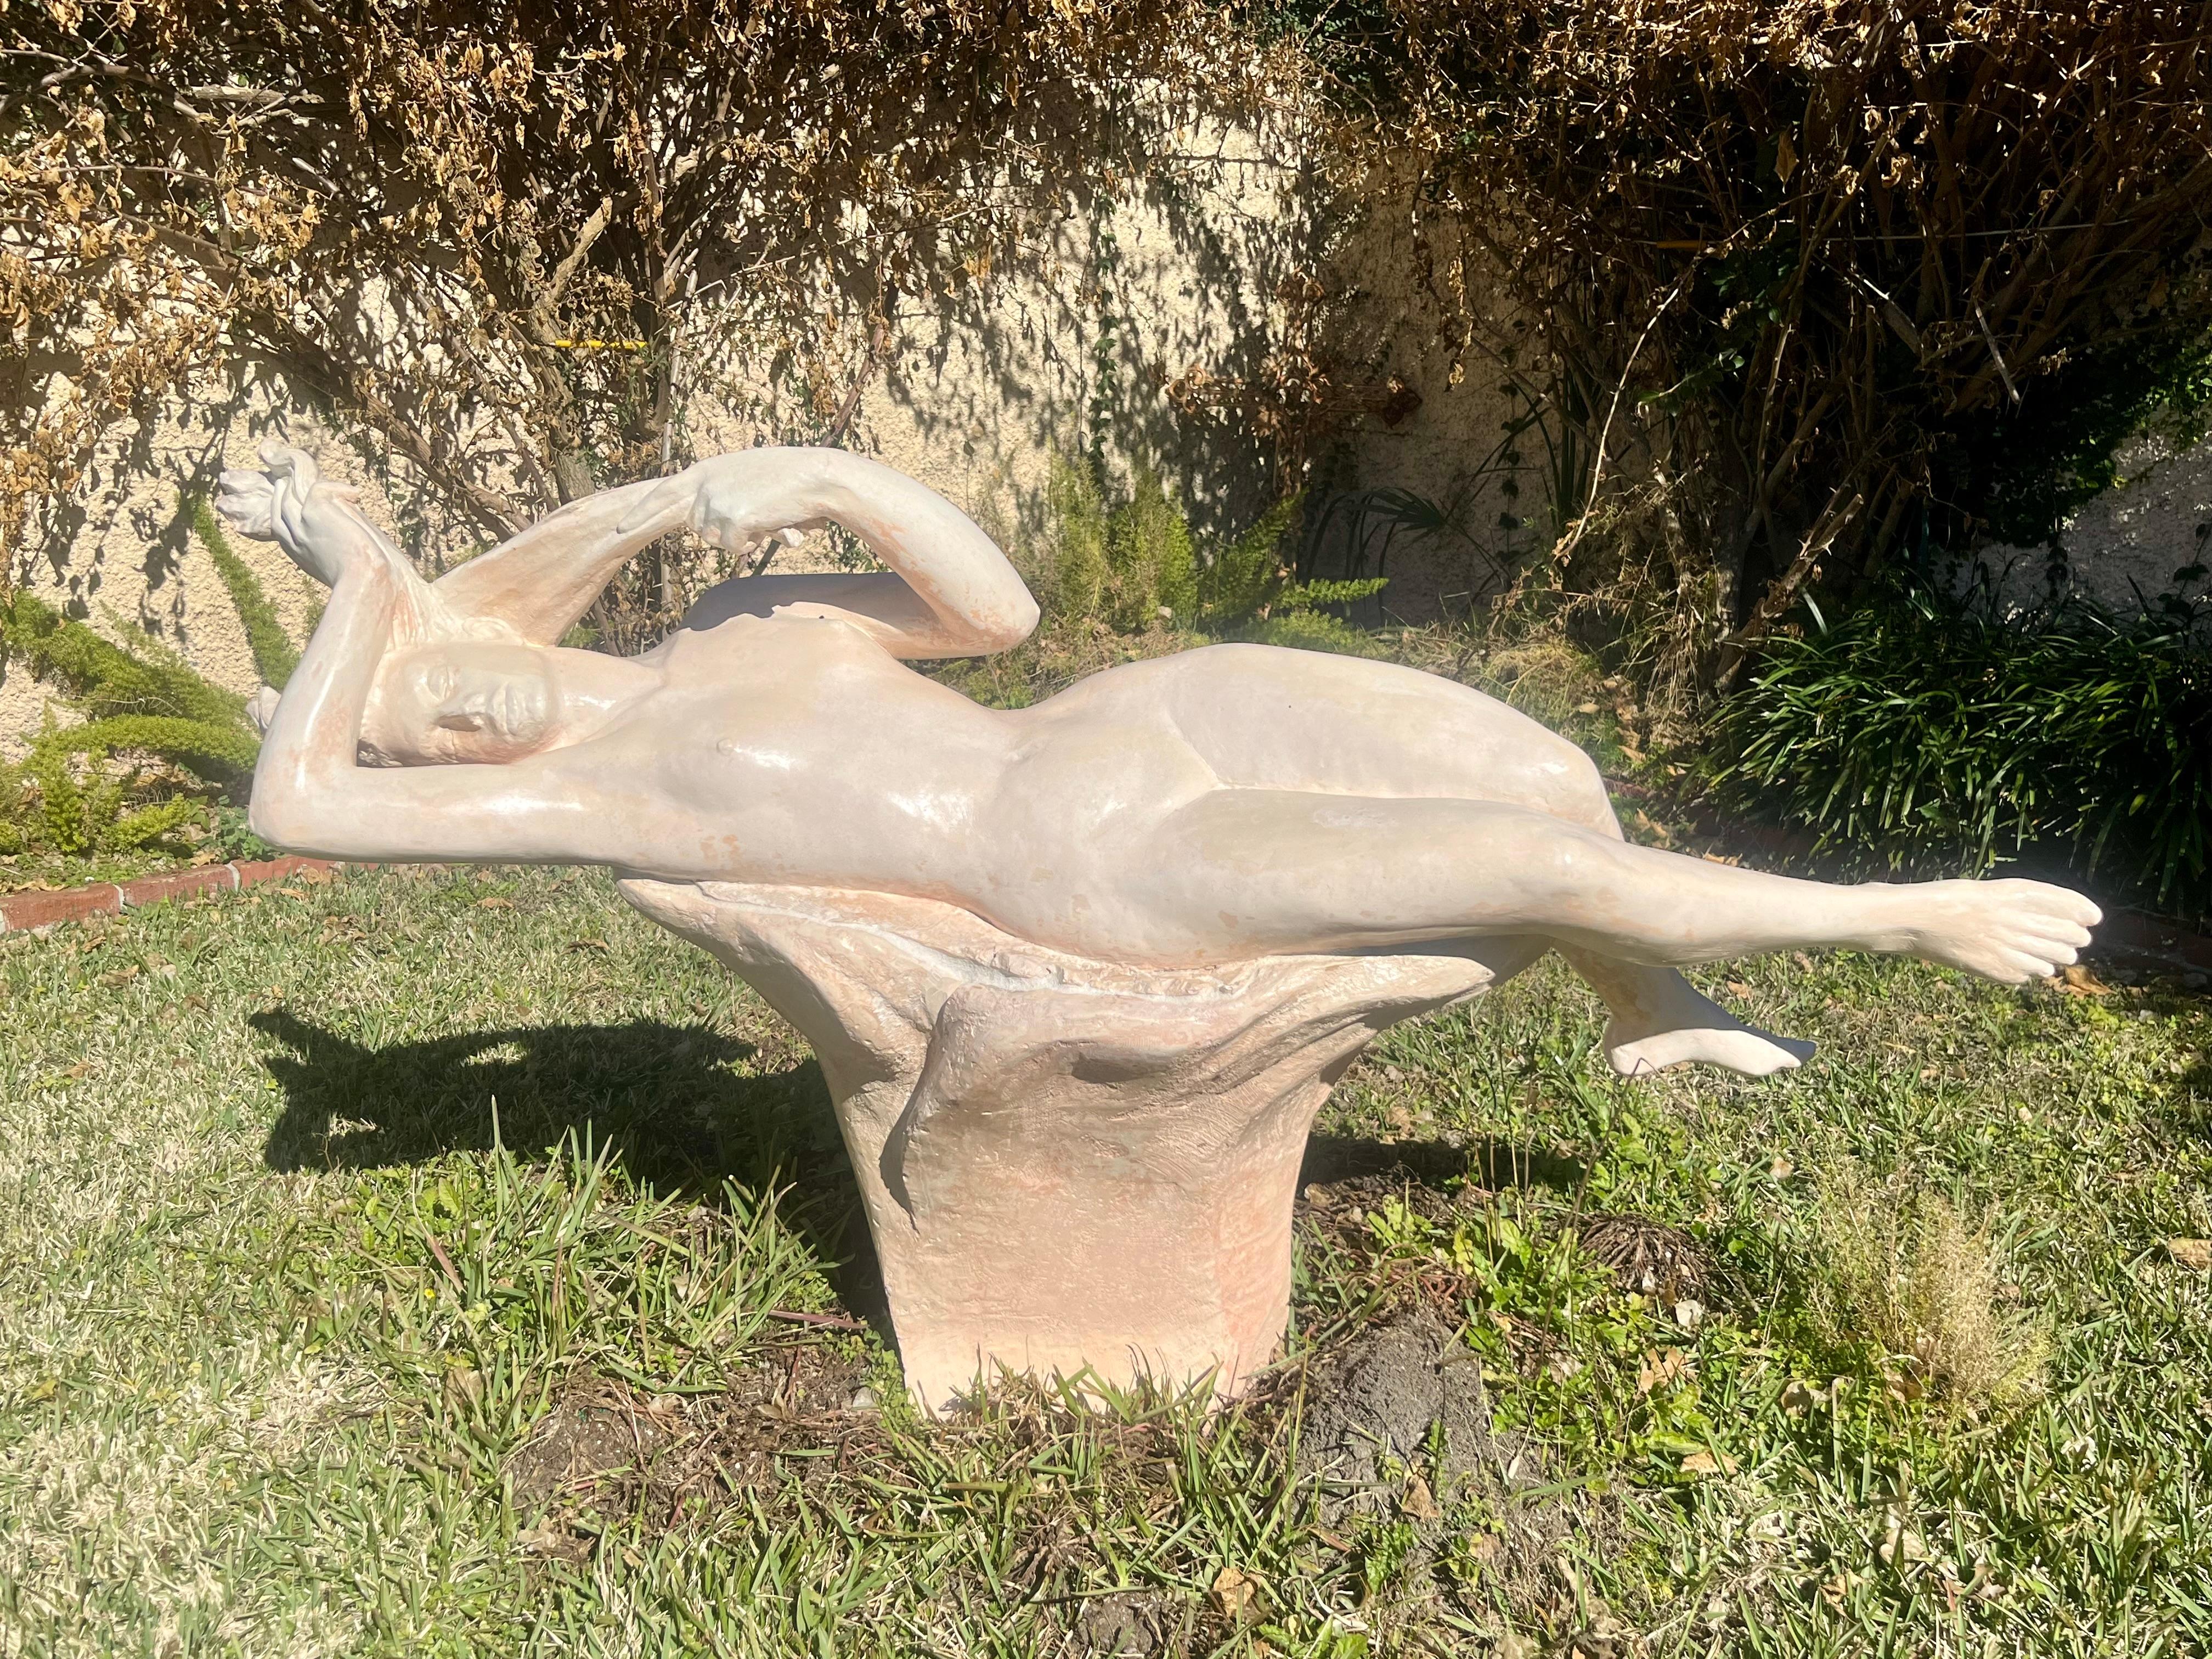 Enrique Alférez Nude Sculpture – Liegender Akt